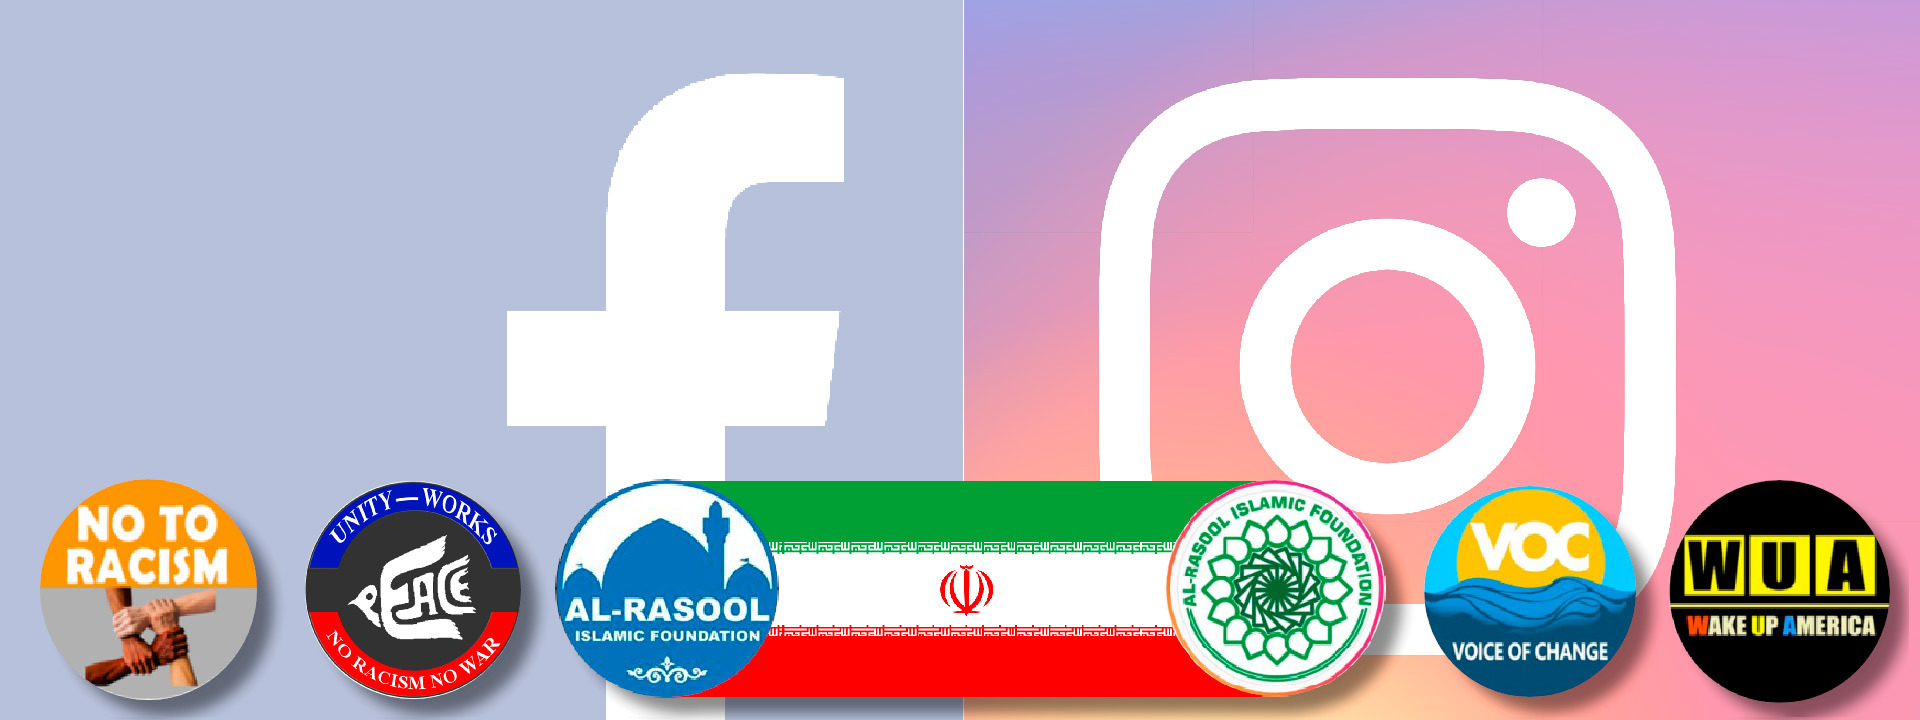 iran-rusia-redes-sociales-facebook